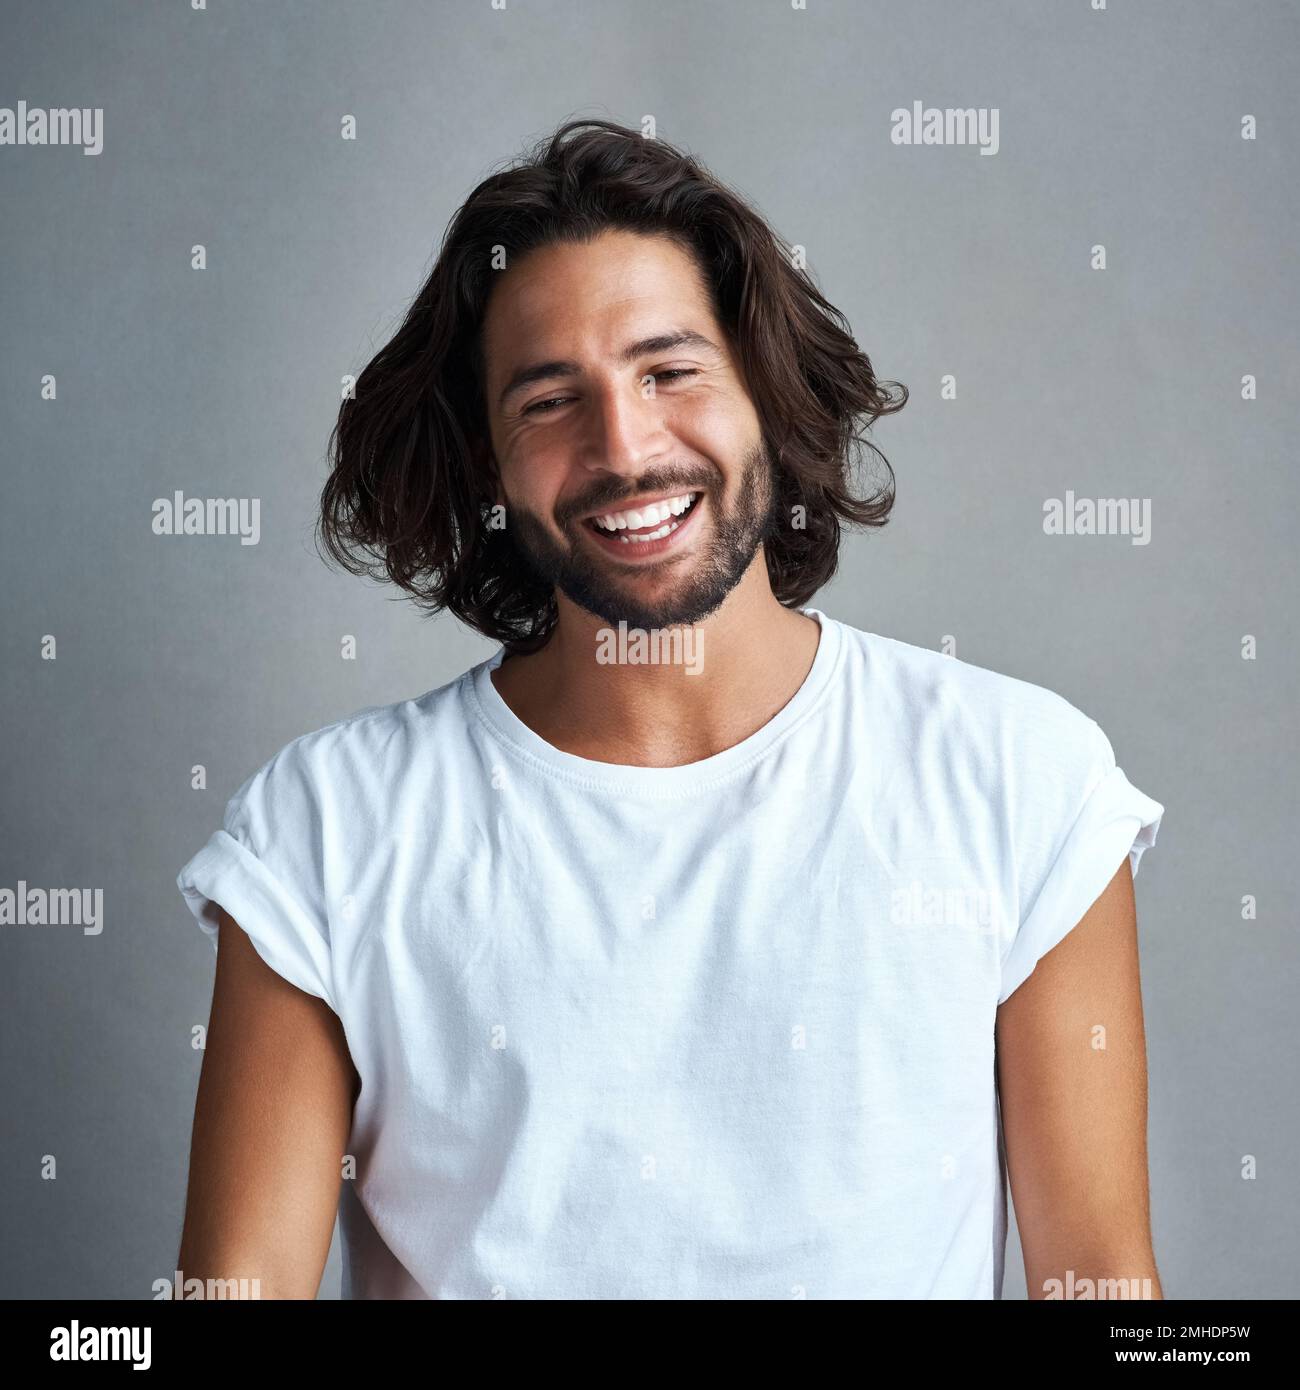 Noch attraktiver, wenn er lächelt. Studiofoto eines gutaussehenden jungen Mannes, der vor grauem Hintergrund posiert. Stockfoto